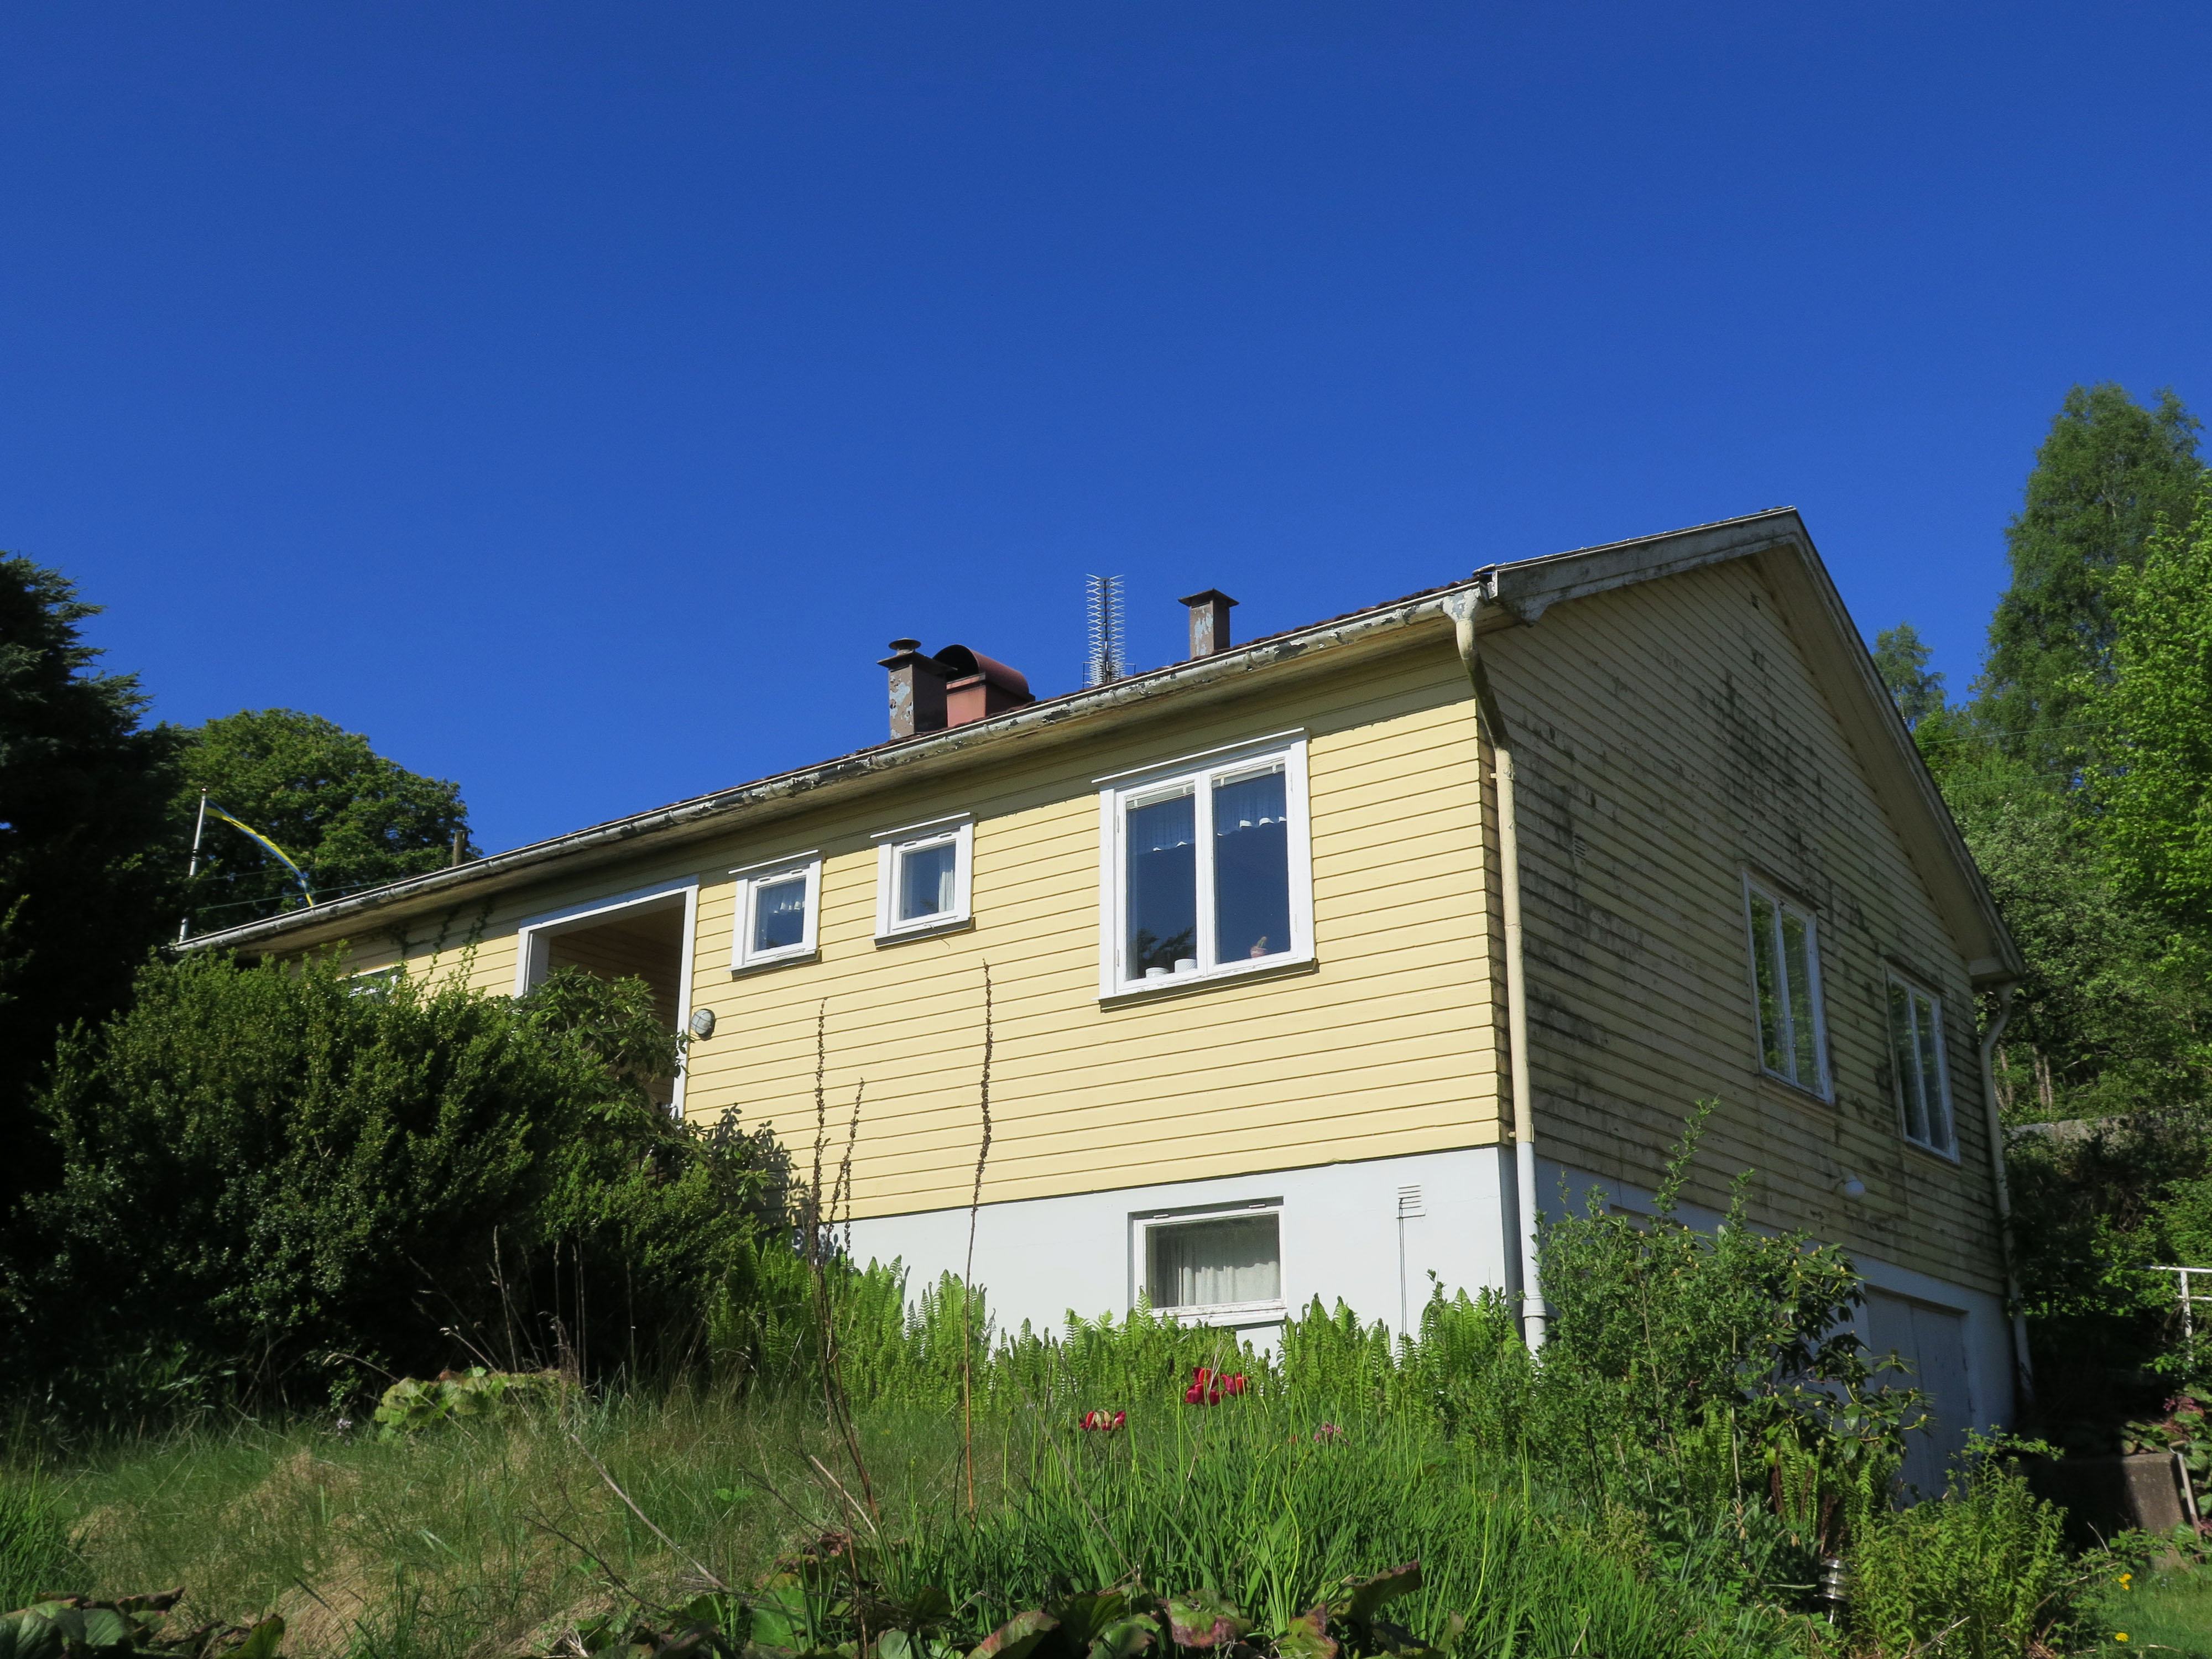 Bostadshuset på fastigheten Håkankila 2:5 är sannolikt uppfört som ersättare för en tidigare mangårdsbyggnad på gården. 